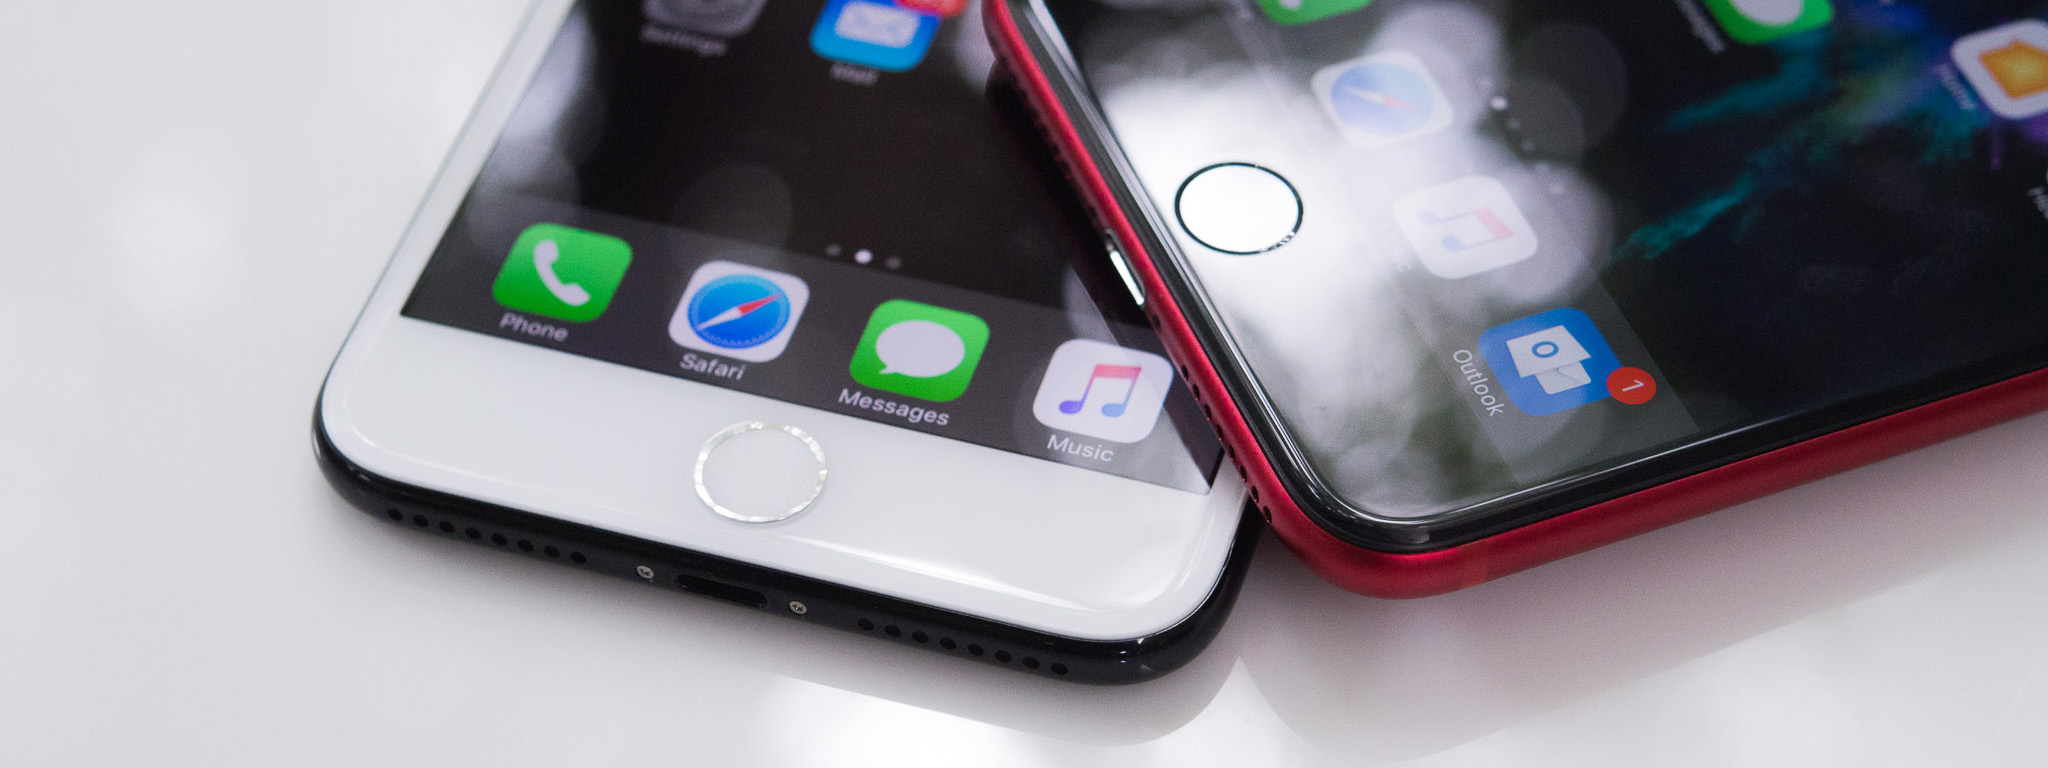 Bàn thêm về việc giảm hiệu năng iPhone khi pin chai: cơ chế, tốt hay không, và Apple nên làm gì